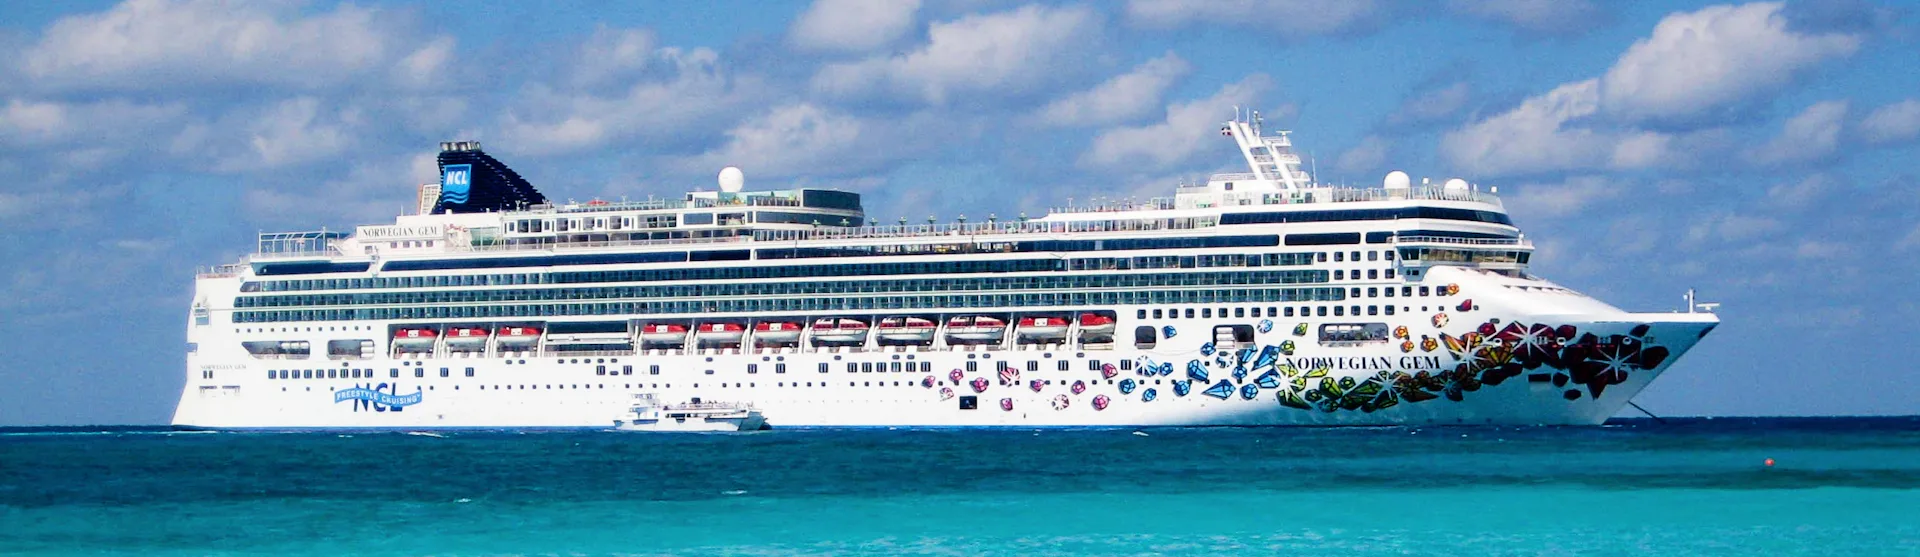 Norwegian Gem - Norwegian Cruise